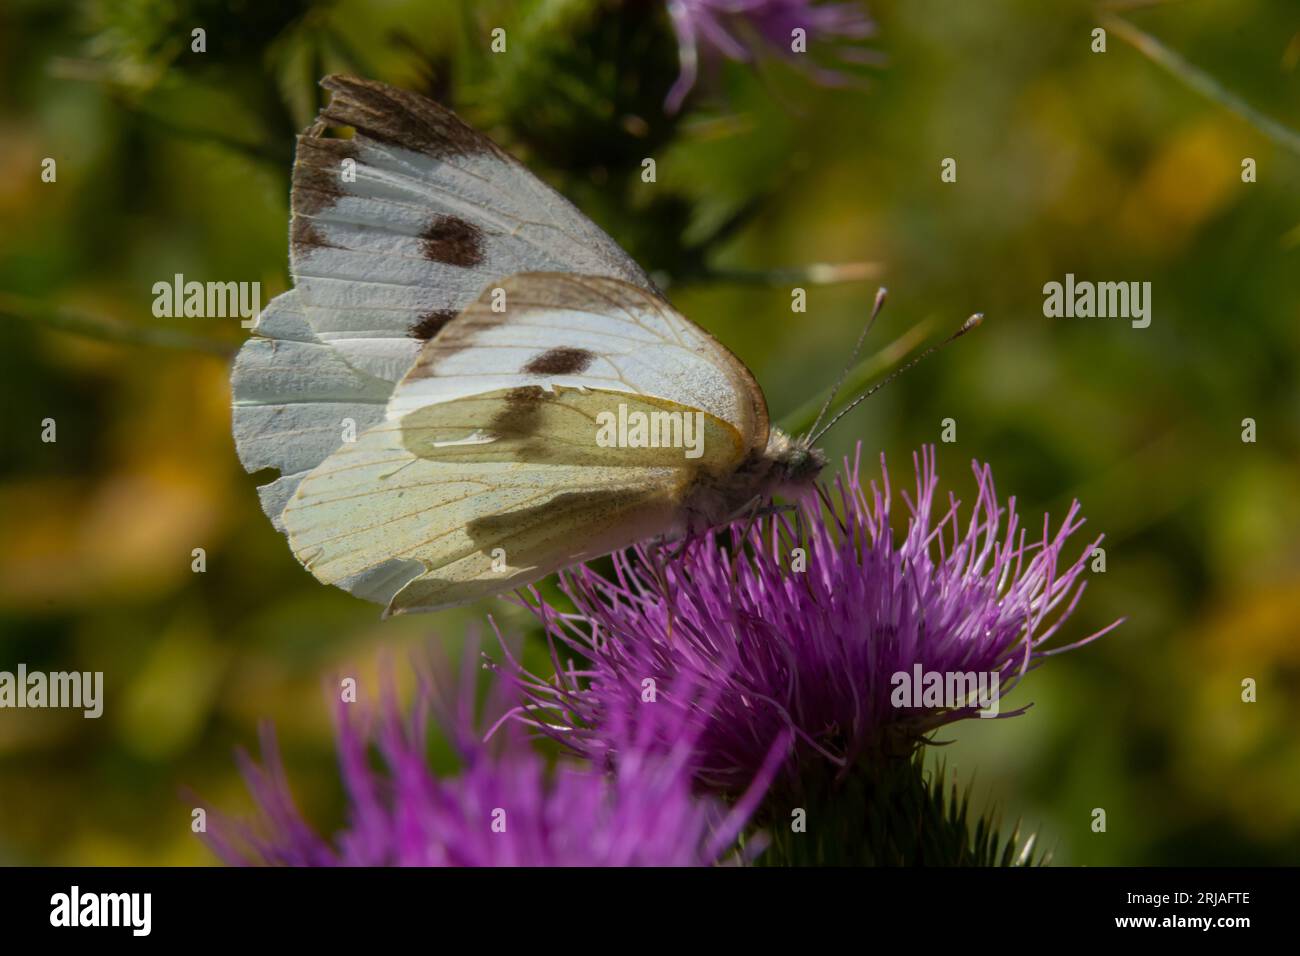 Femelle européenne Grand chou blanc papillon Pieris brassicae se nourrissant d'une fleur de chardon. Banque D'Images